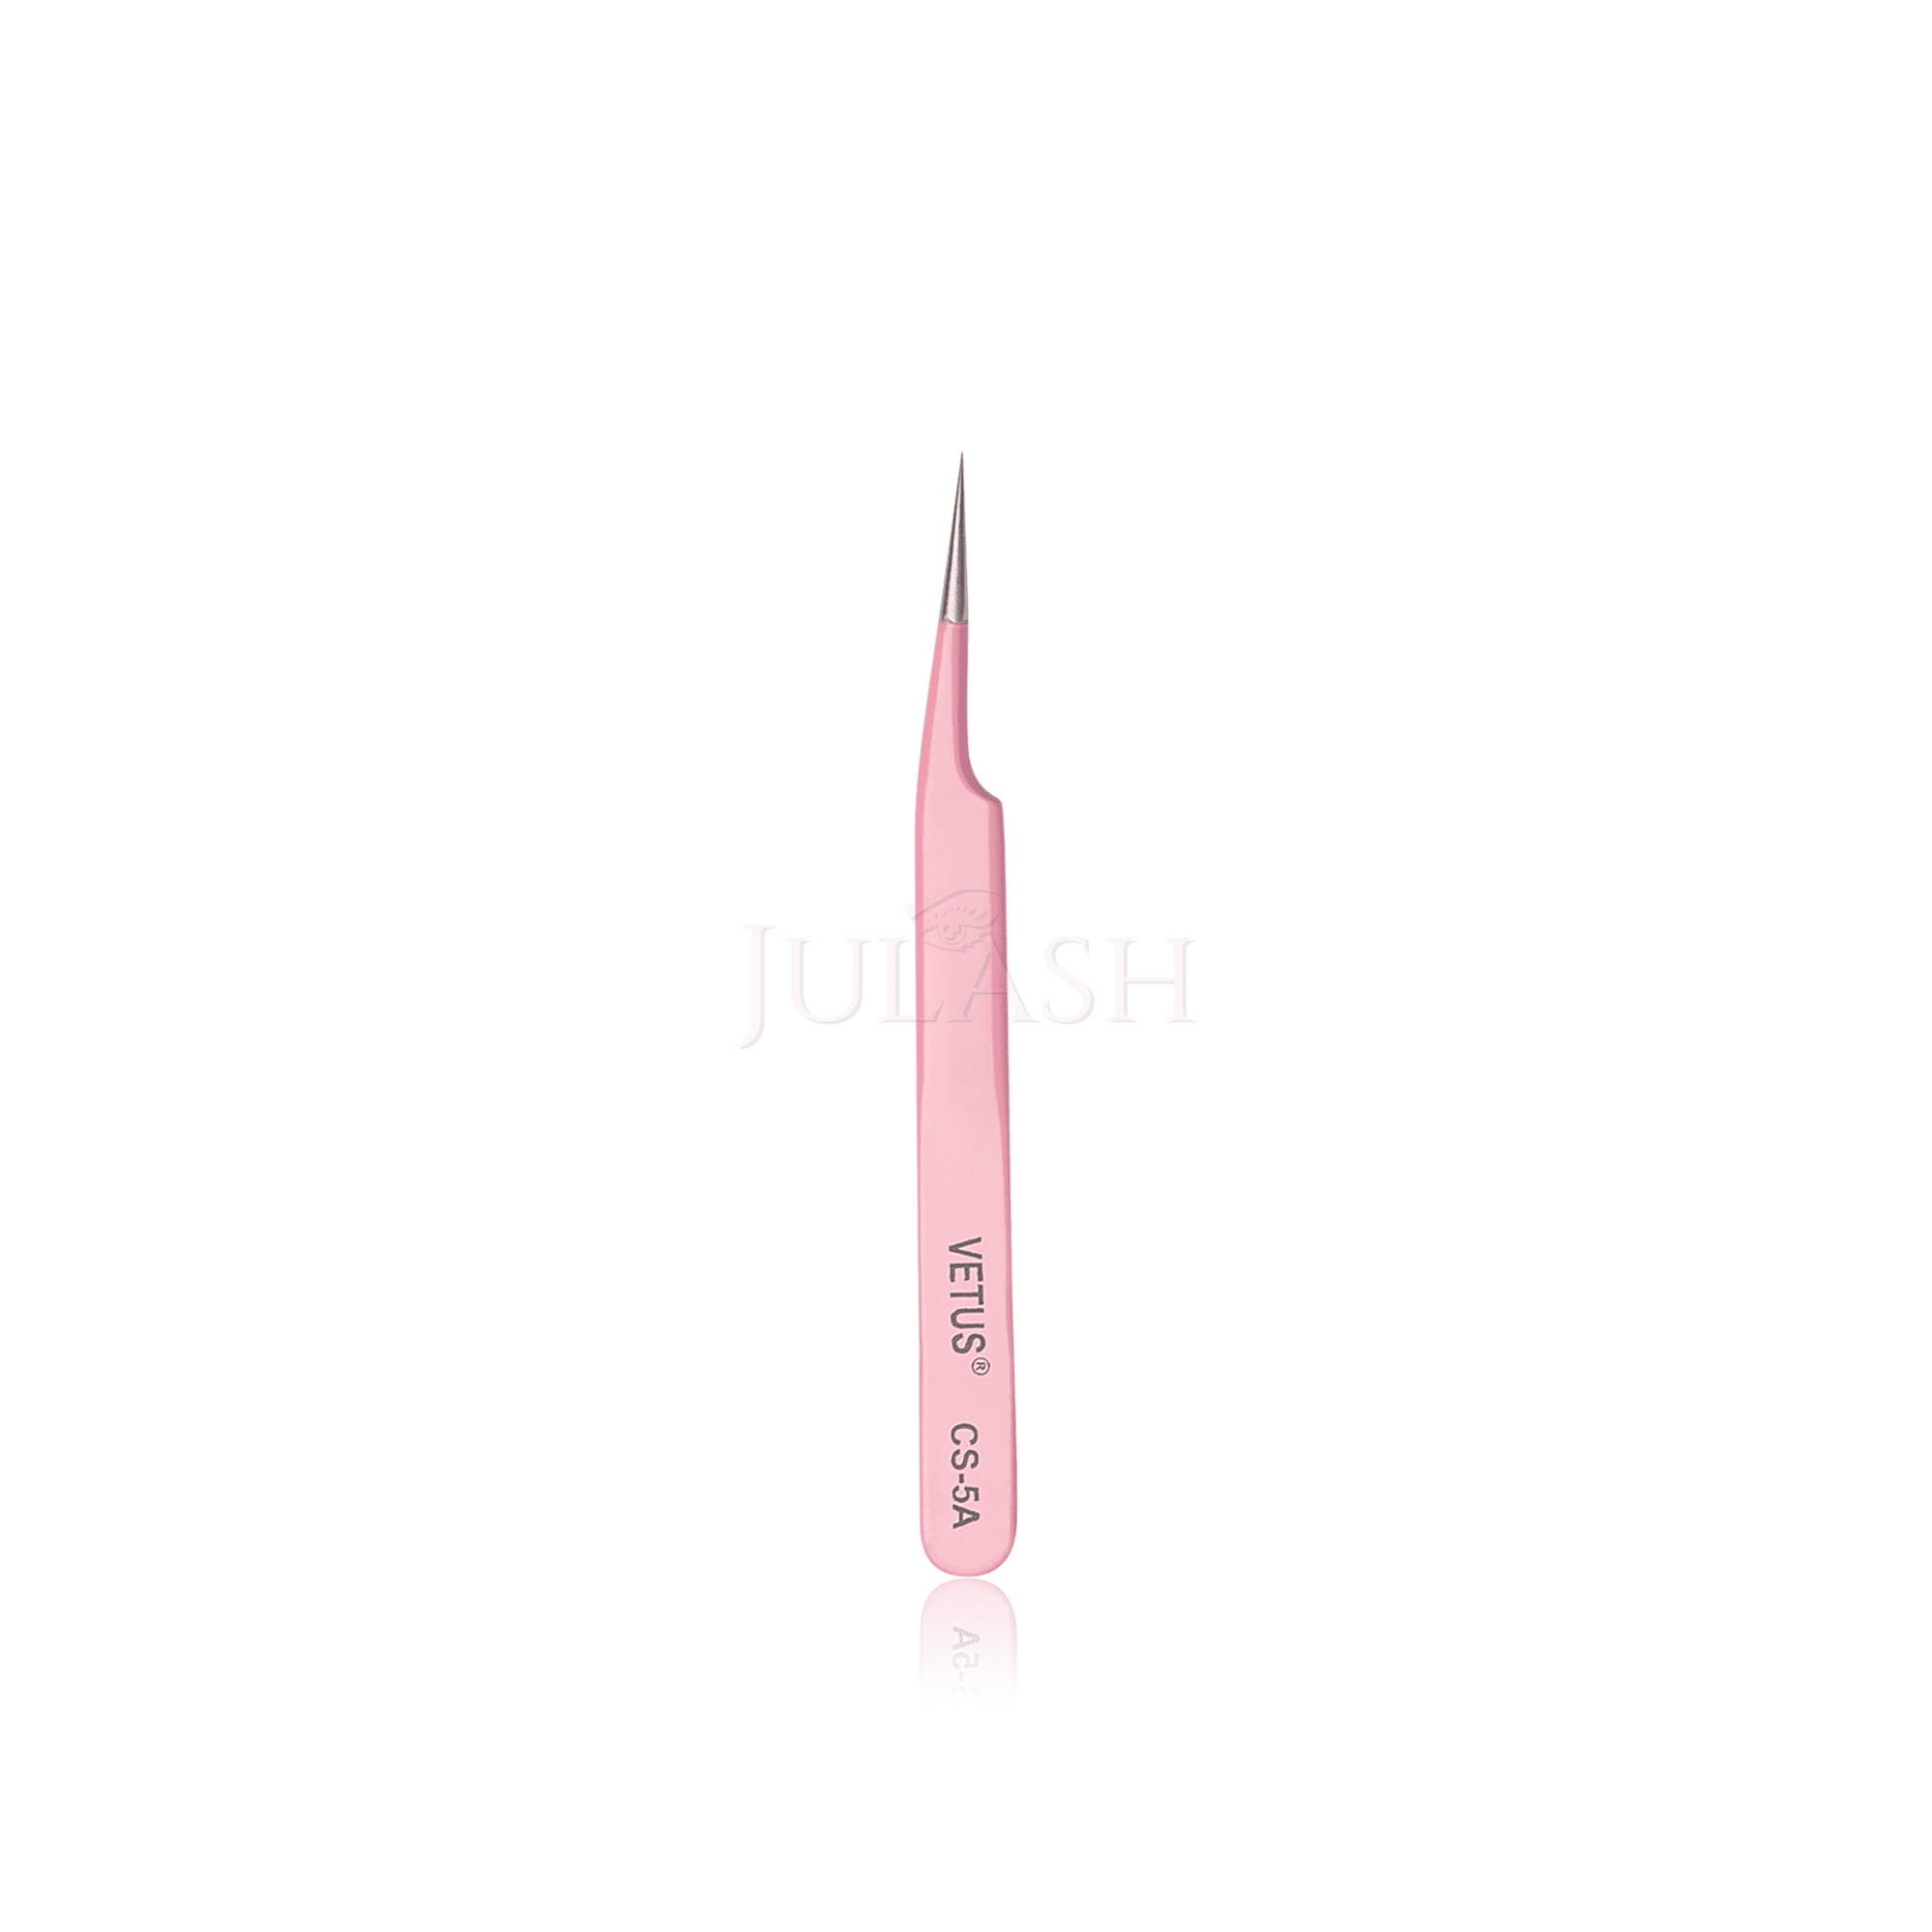 VETUS Pincett Pink CS-5A